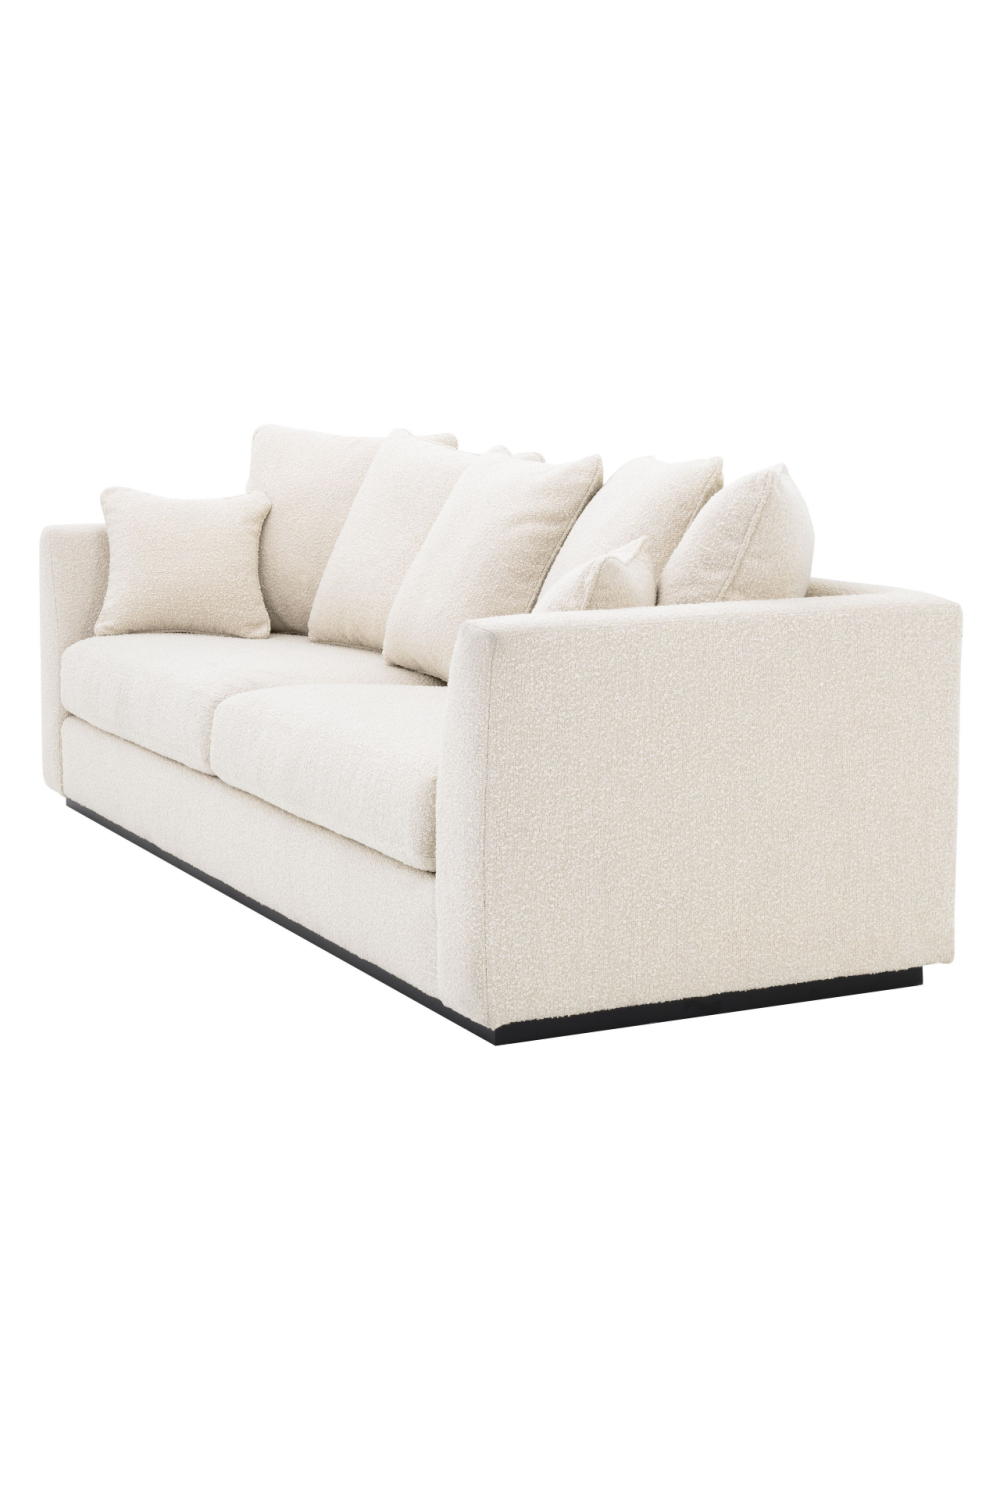 Cream Bouclé Sofa With Cushions | Eichholtz Taylor | Oroa.com